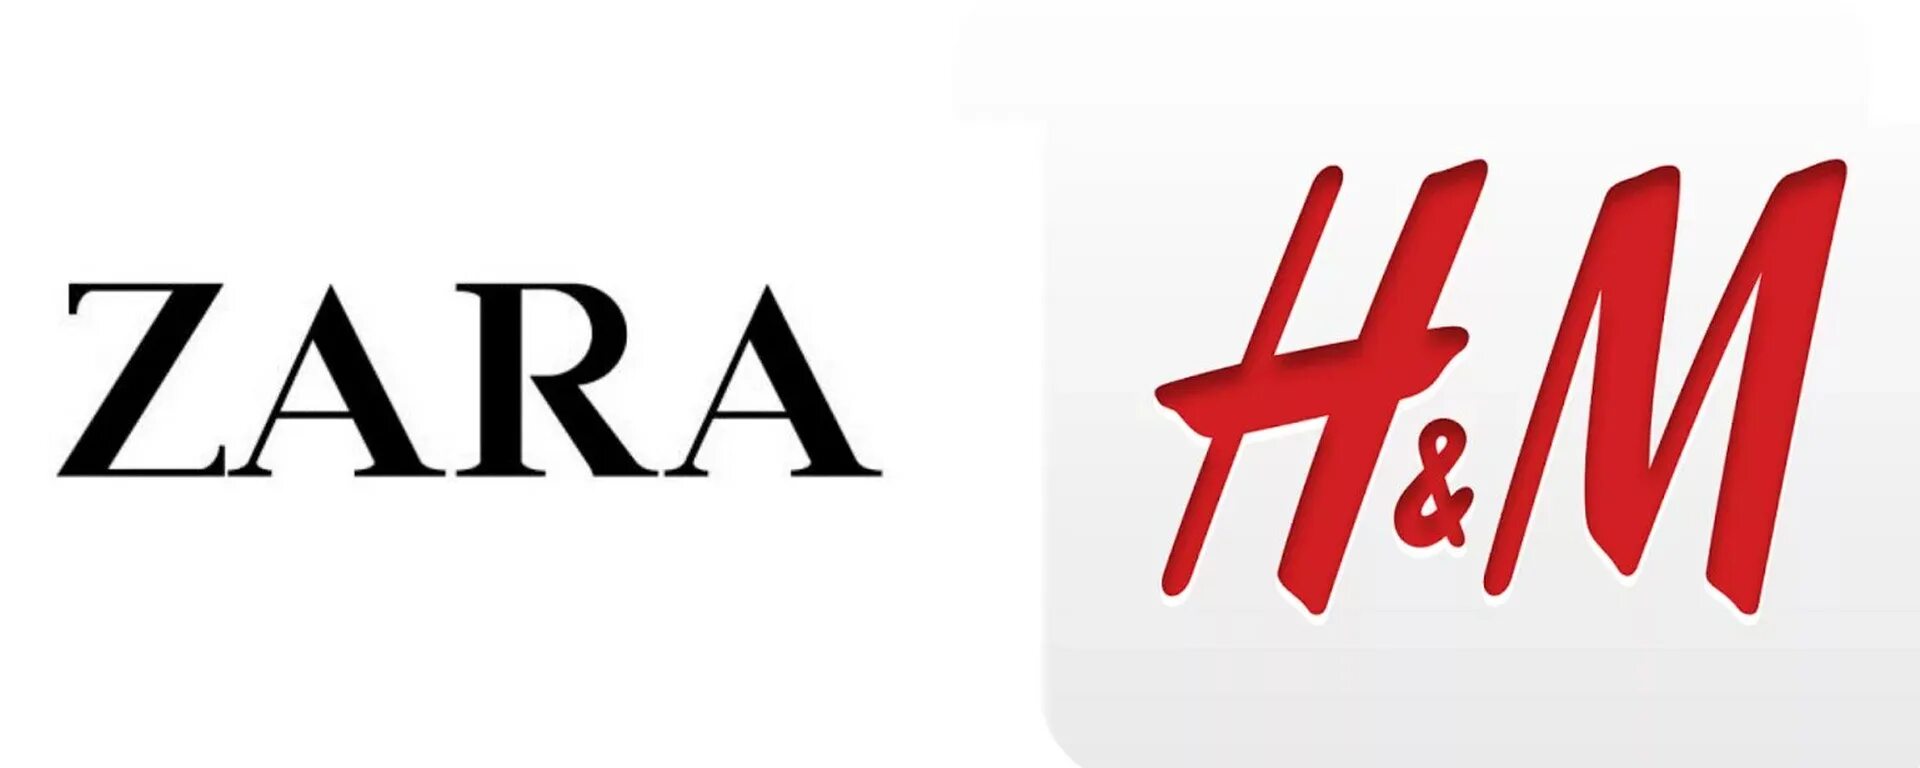 Х зарам. Zara надпись. Zara логотип.